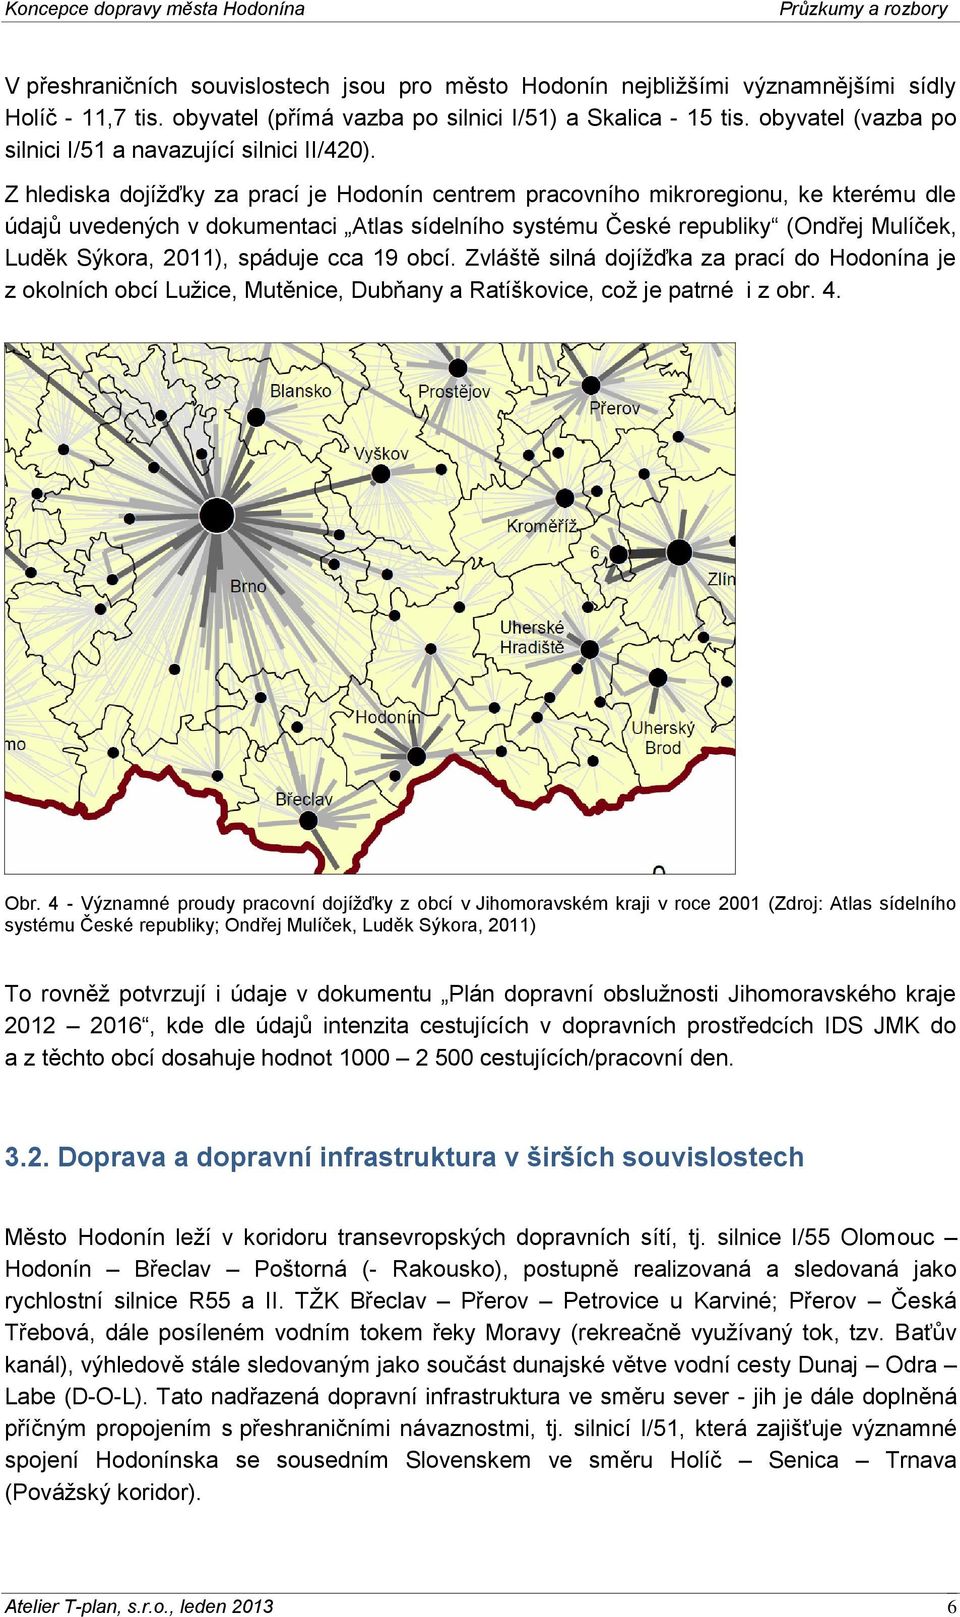 Z hlediska dojížďky za prací je Hodonín centrem pracovního mikroregionu, ke kterému dle údajů uvedených v dokumentaci Atlas sídelního systému České republiky (Ondřej Mulíček, Luděk Sýkora, 2011),